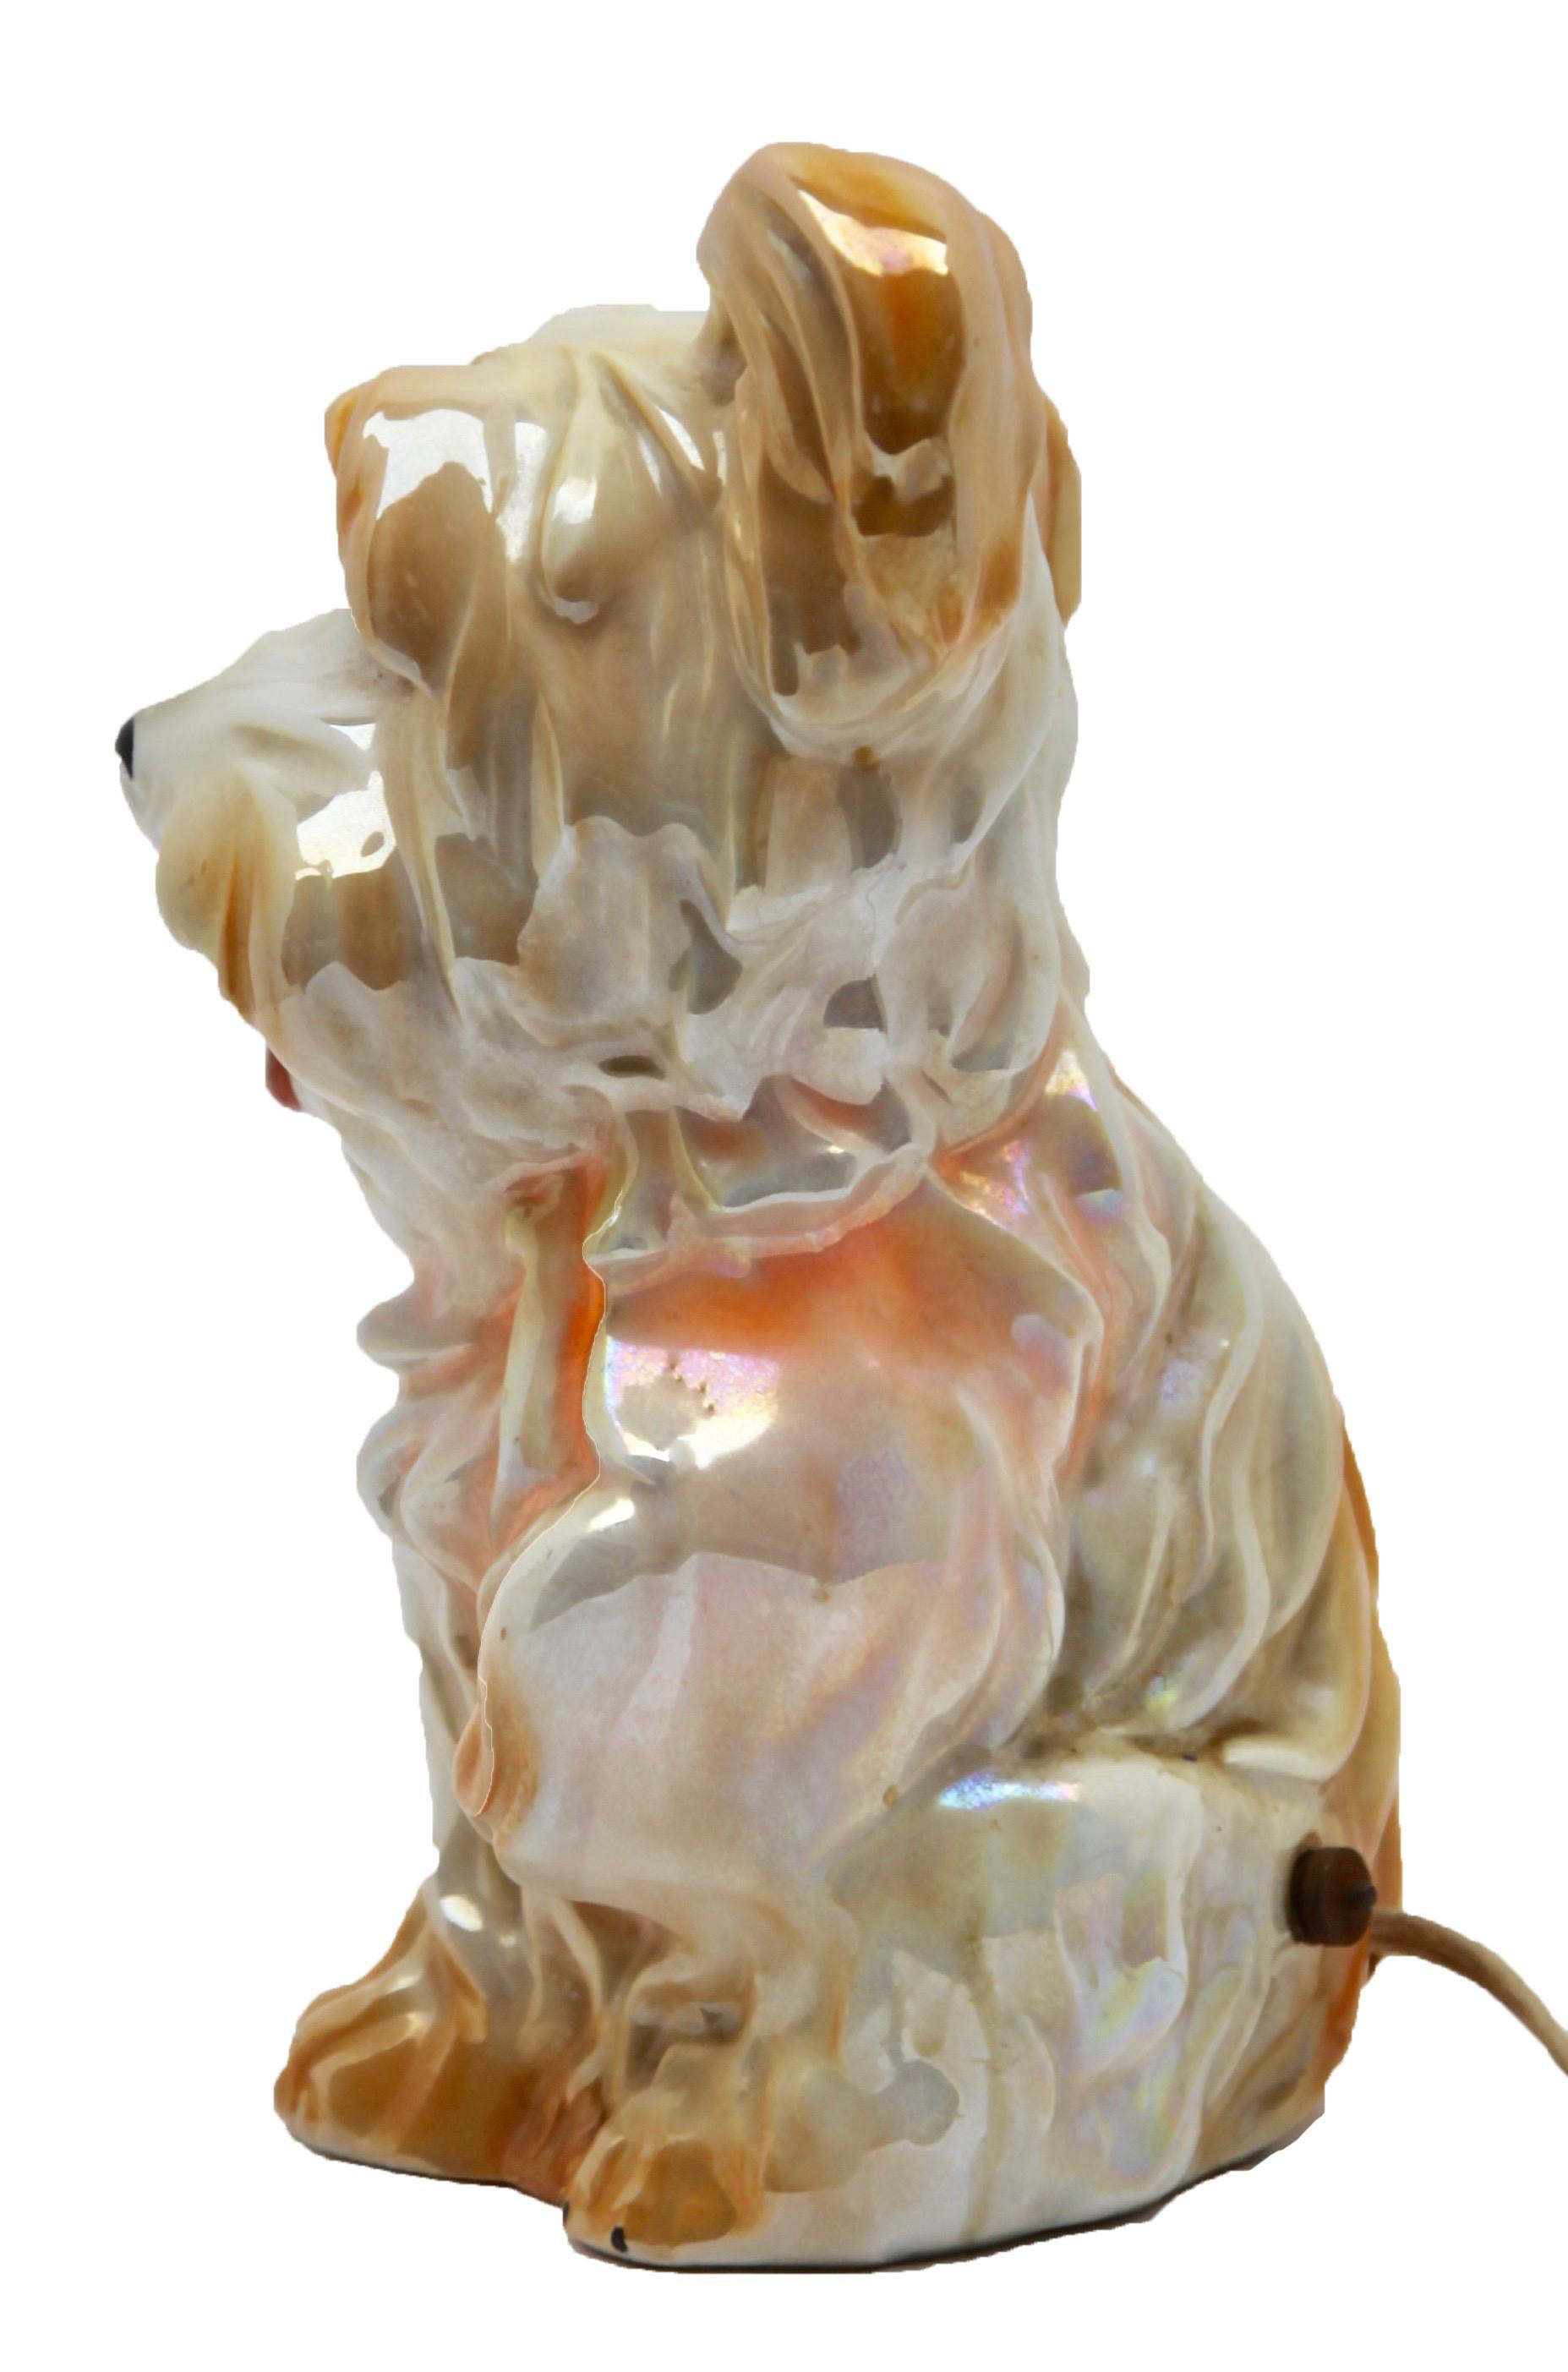 Rare et magnifique lampe à parfum pour chien attribuée à Carl Scheidig Grafenthal, Allemagne.
Excellent état, la lampe est en état de marche.
Taille : Hauteur 17 cm, 6.7 in, largeur 11 cm, 4.33 in.
Allemagne, années 1930, excellent état
Figurine